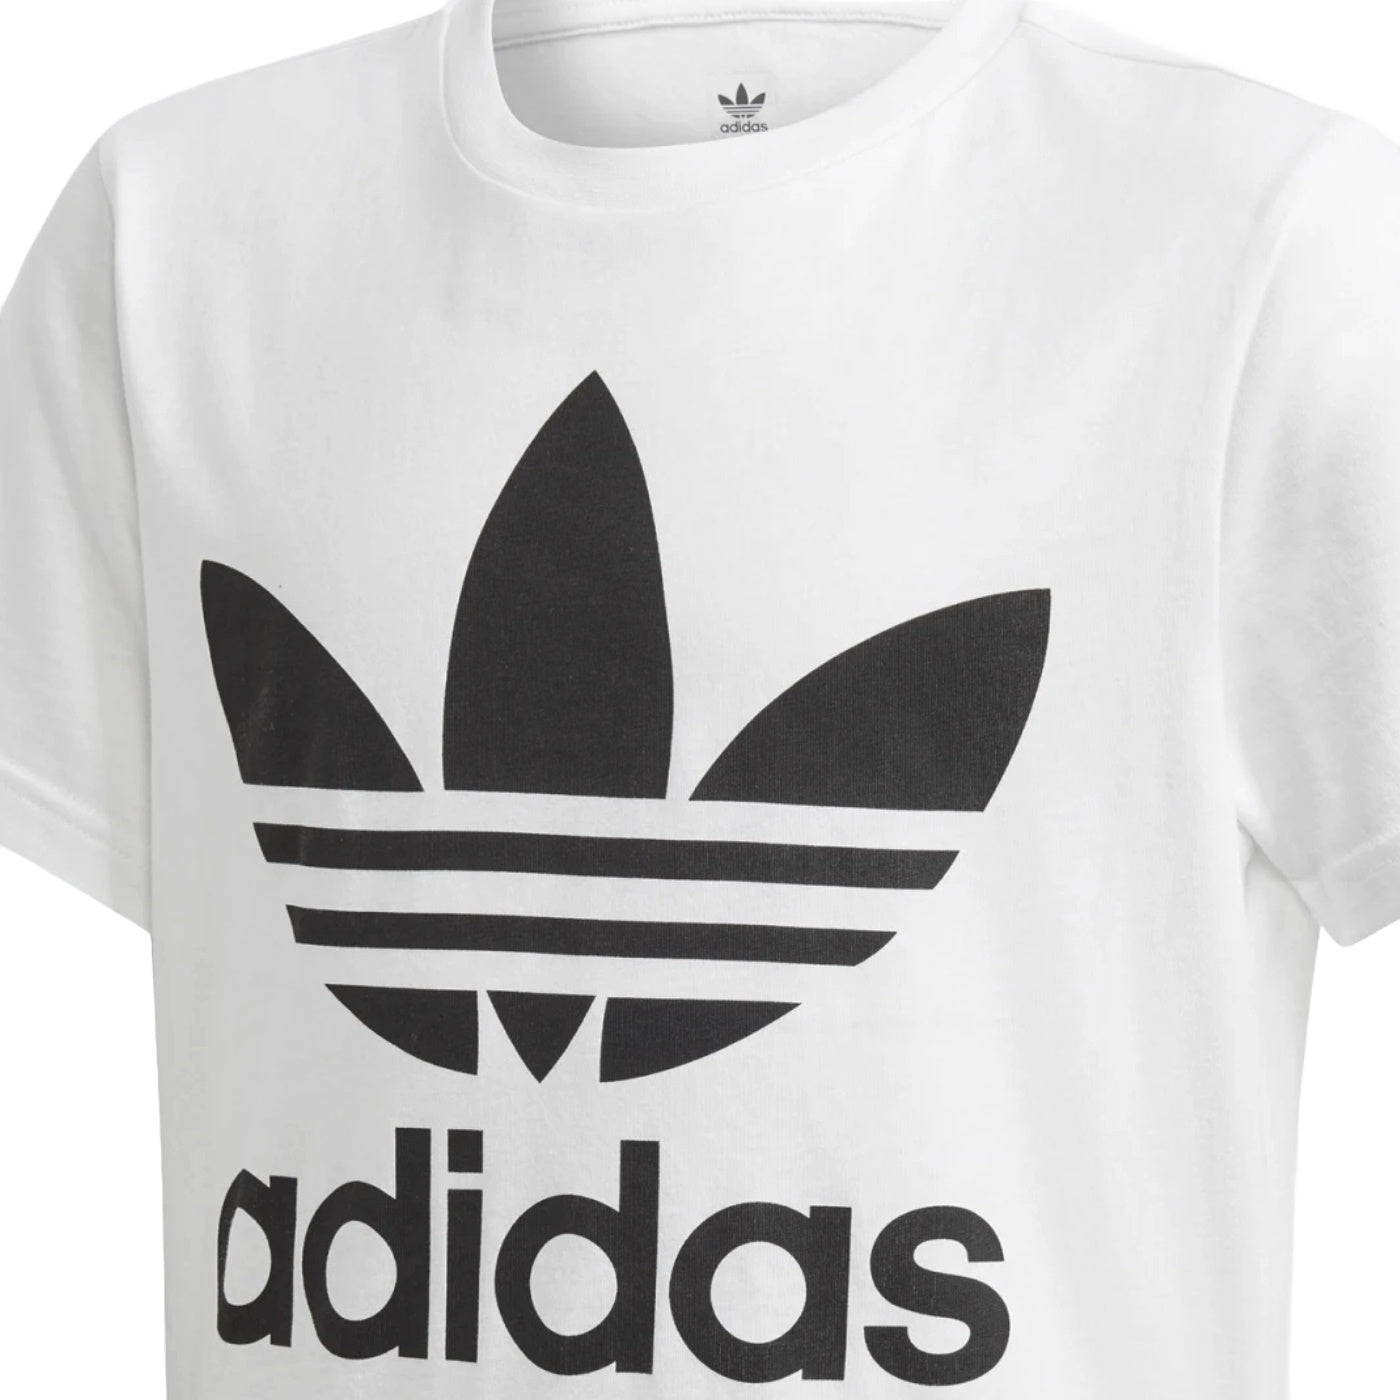 Adidas t-shirt baby unisex